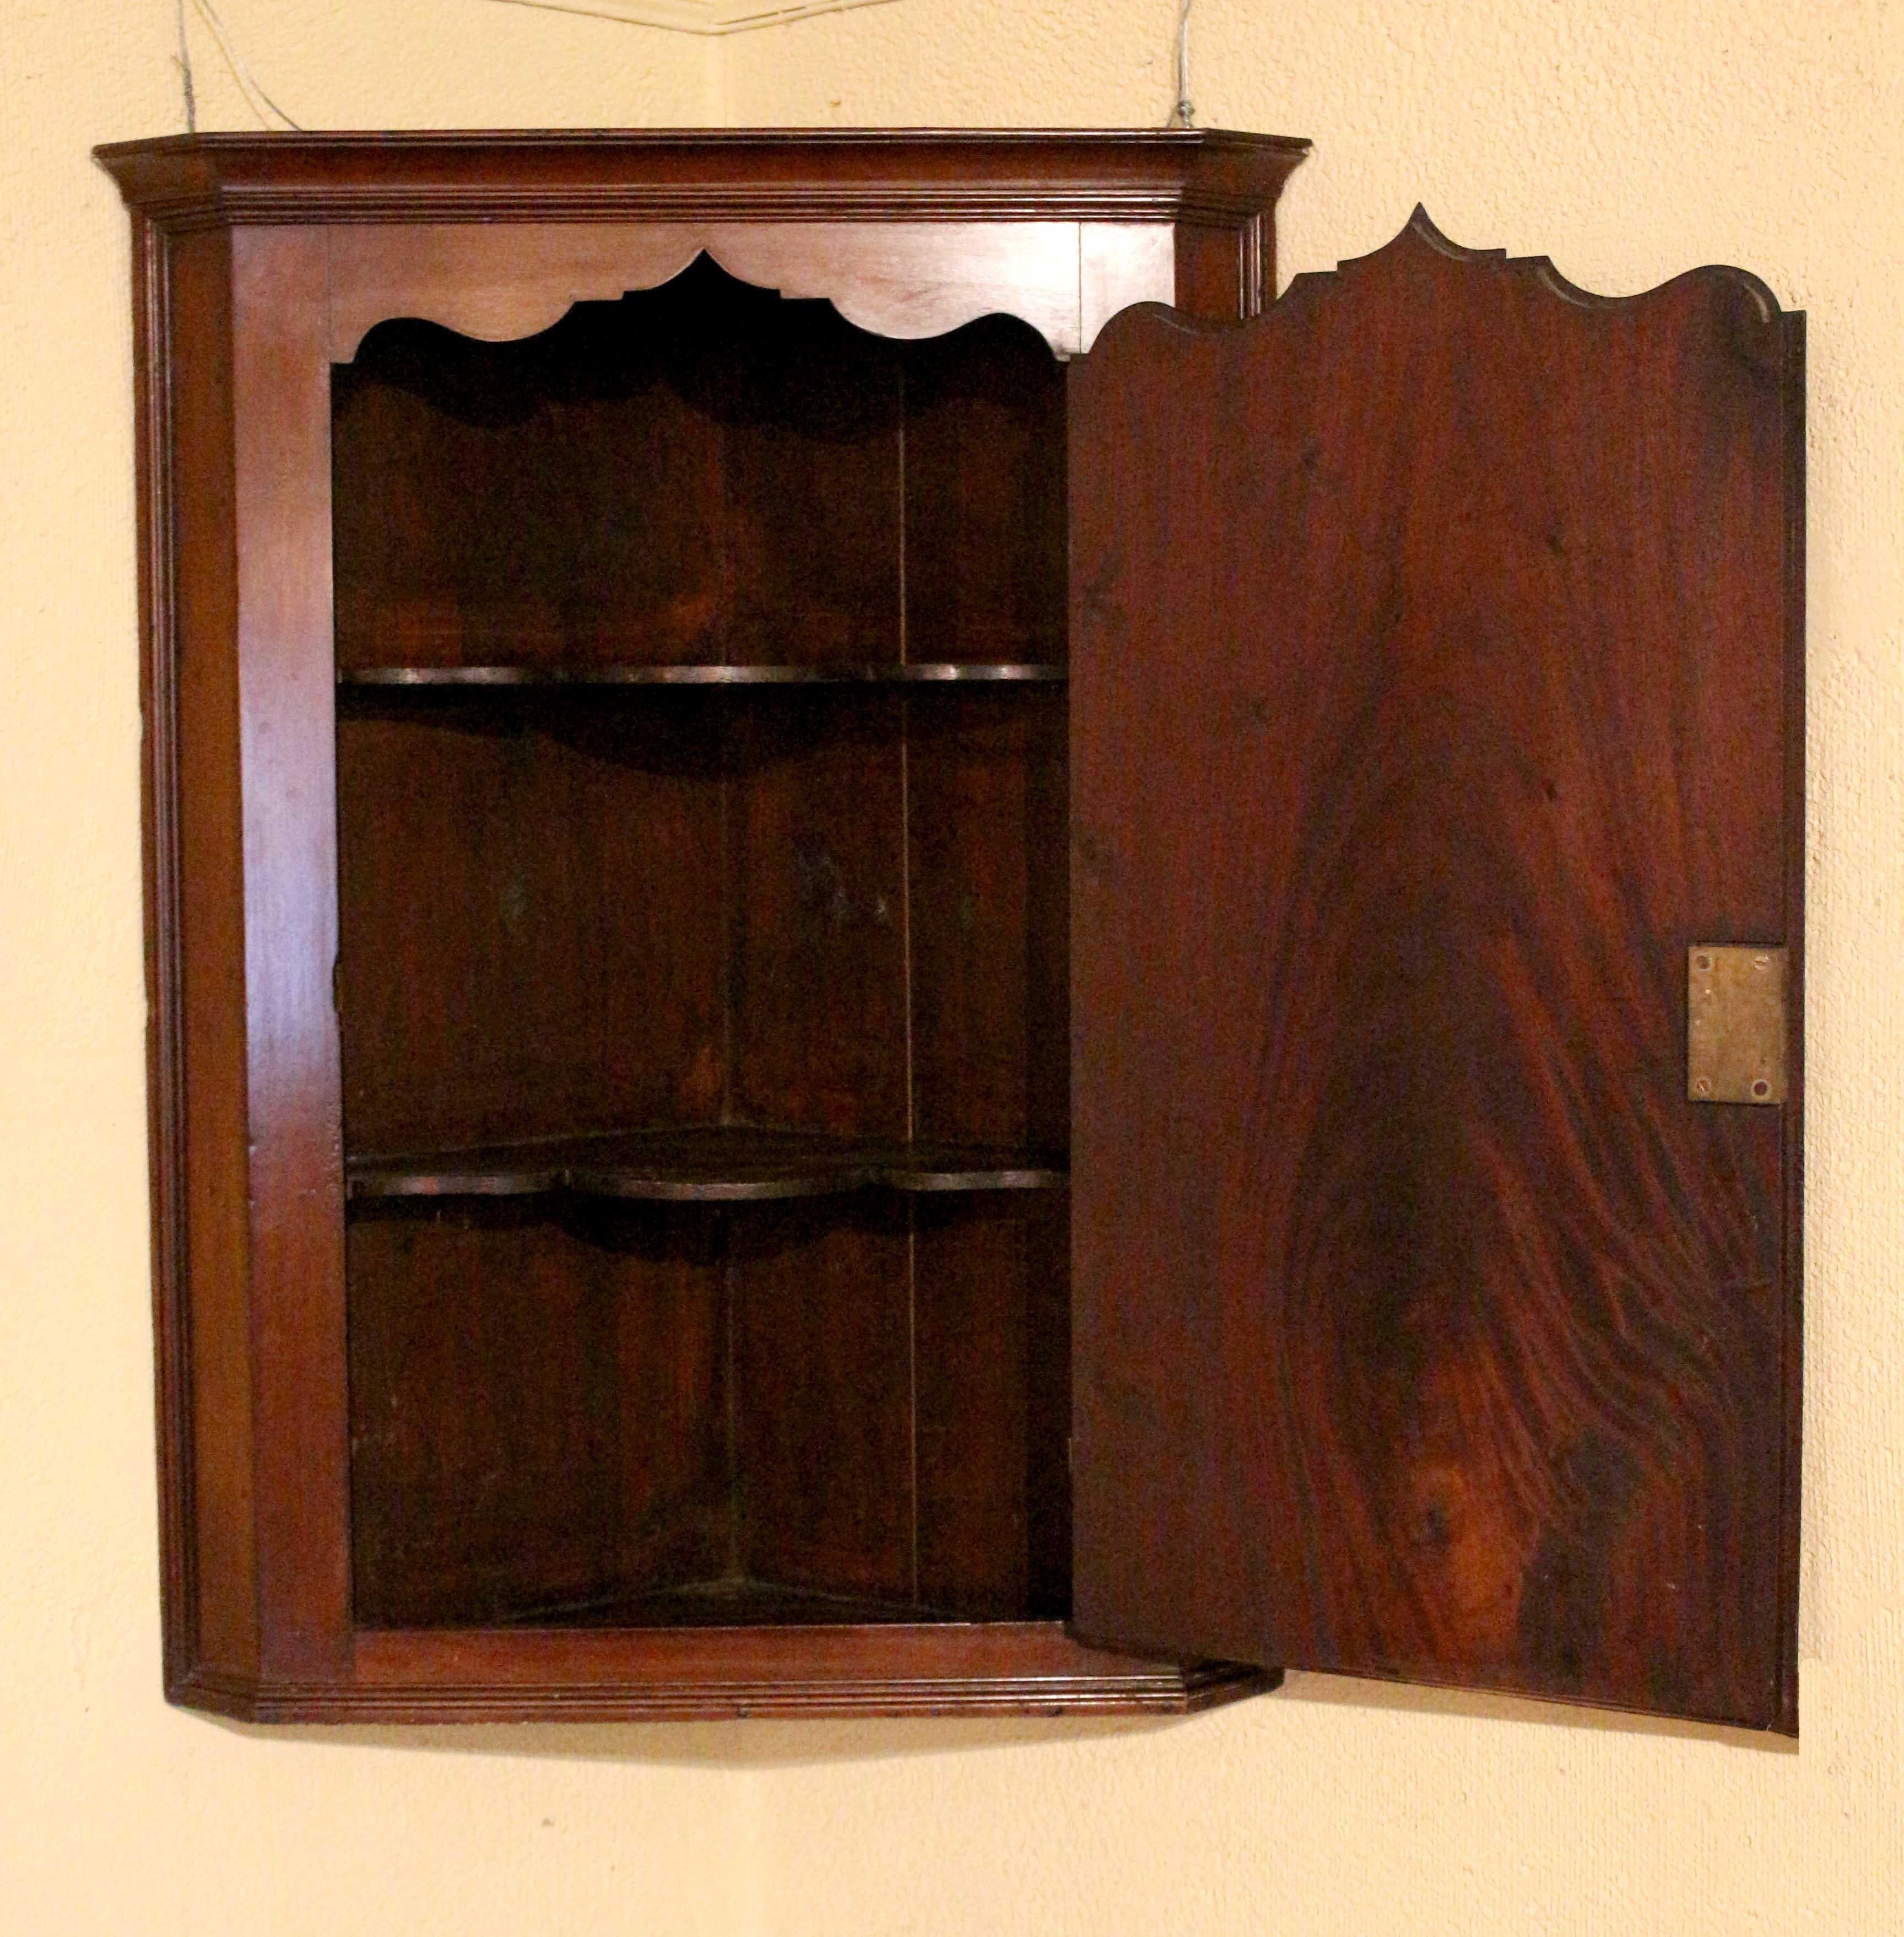 Cabinet d'angle à porte aveugle suspendue, circa 1800, anglais. Période George III. Les étagères intérieures en forme suivent la forme de la porte. Incrustation d'une étoile sous une incrustation ovale florale. Bien moulé autour de l'ensemble.
16